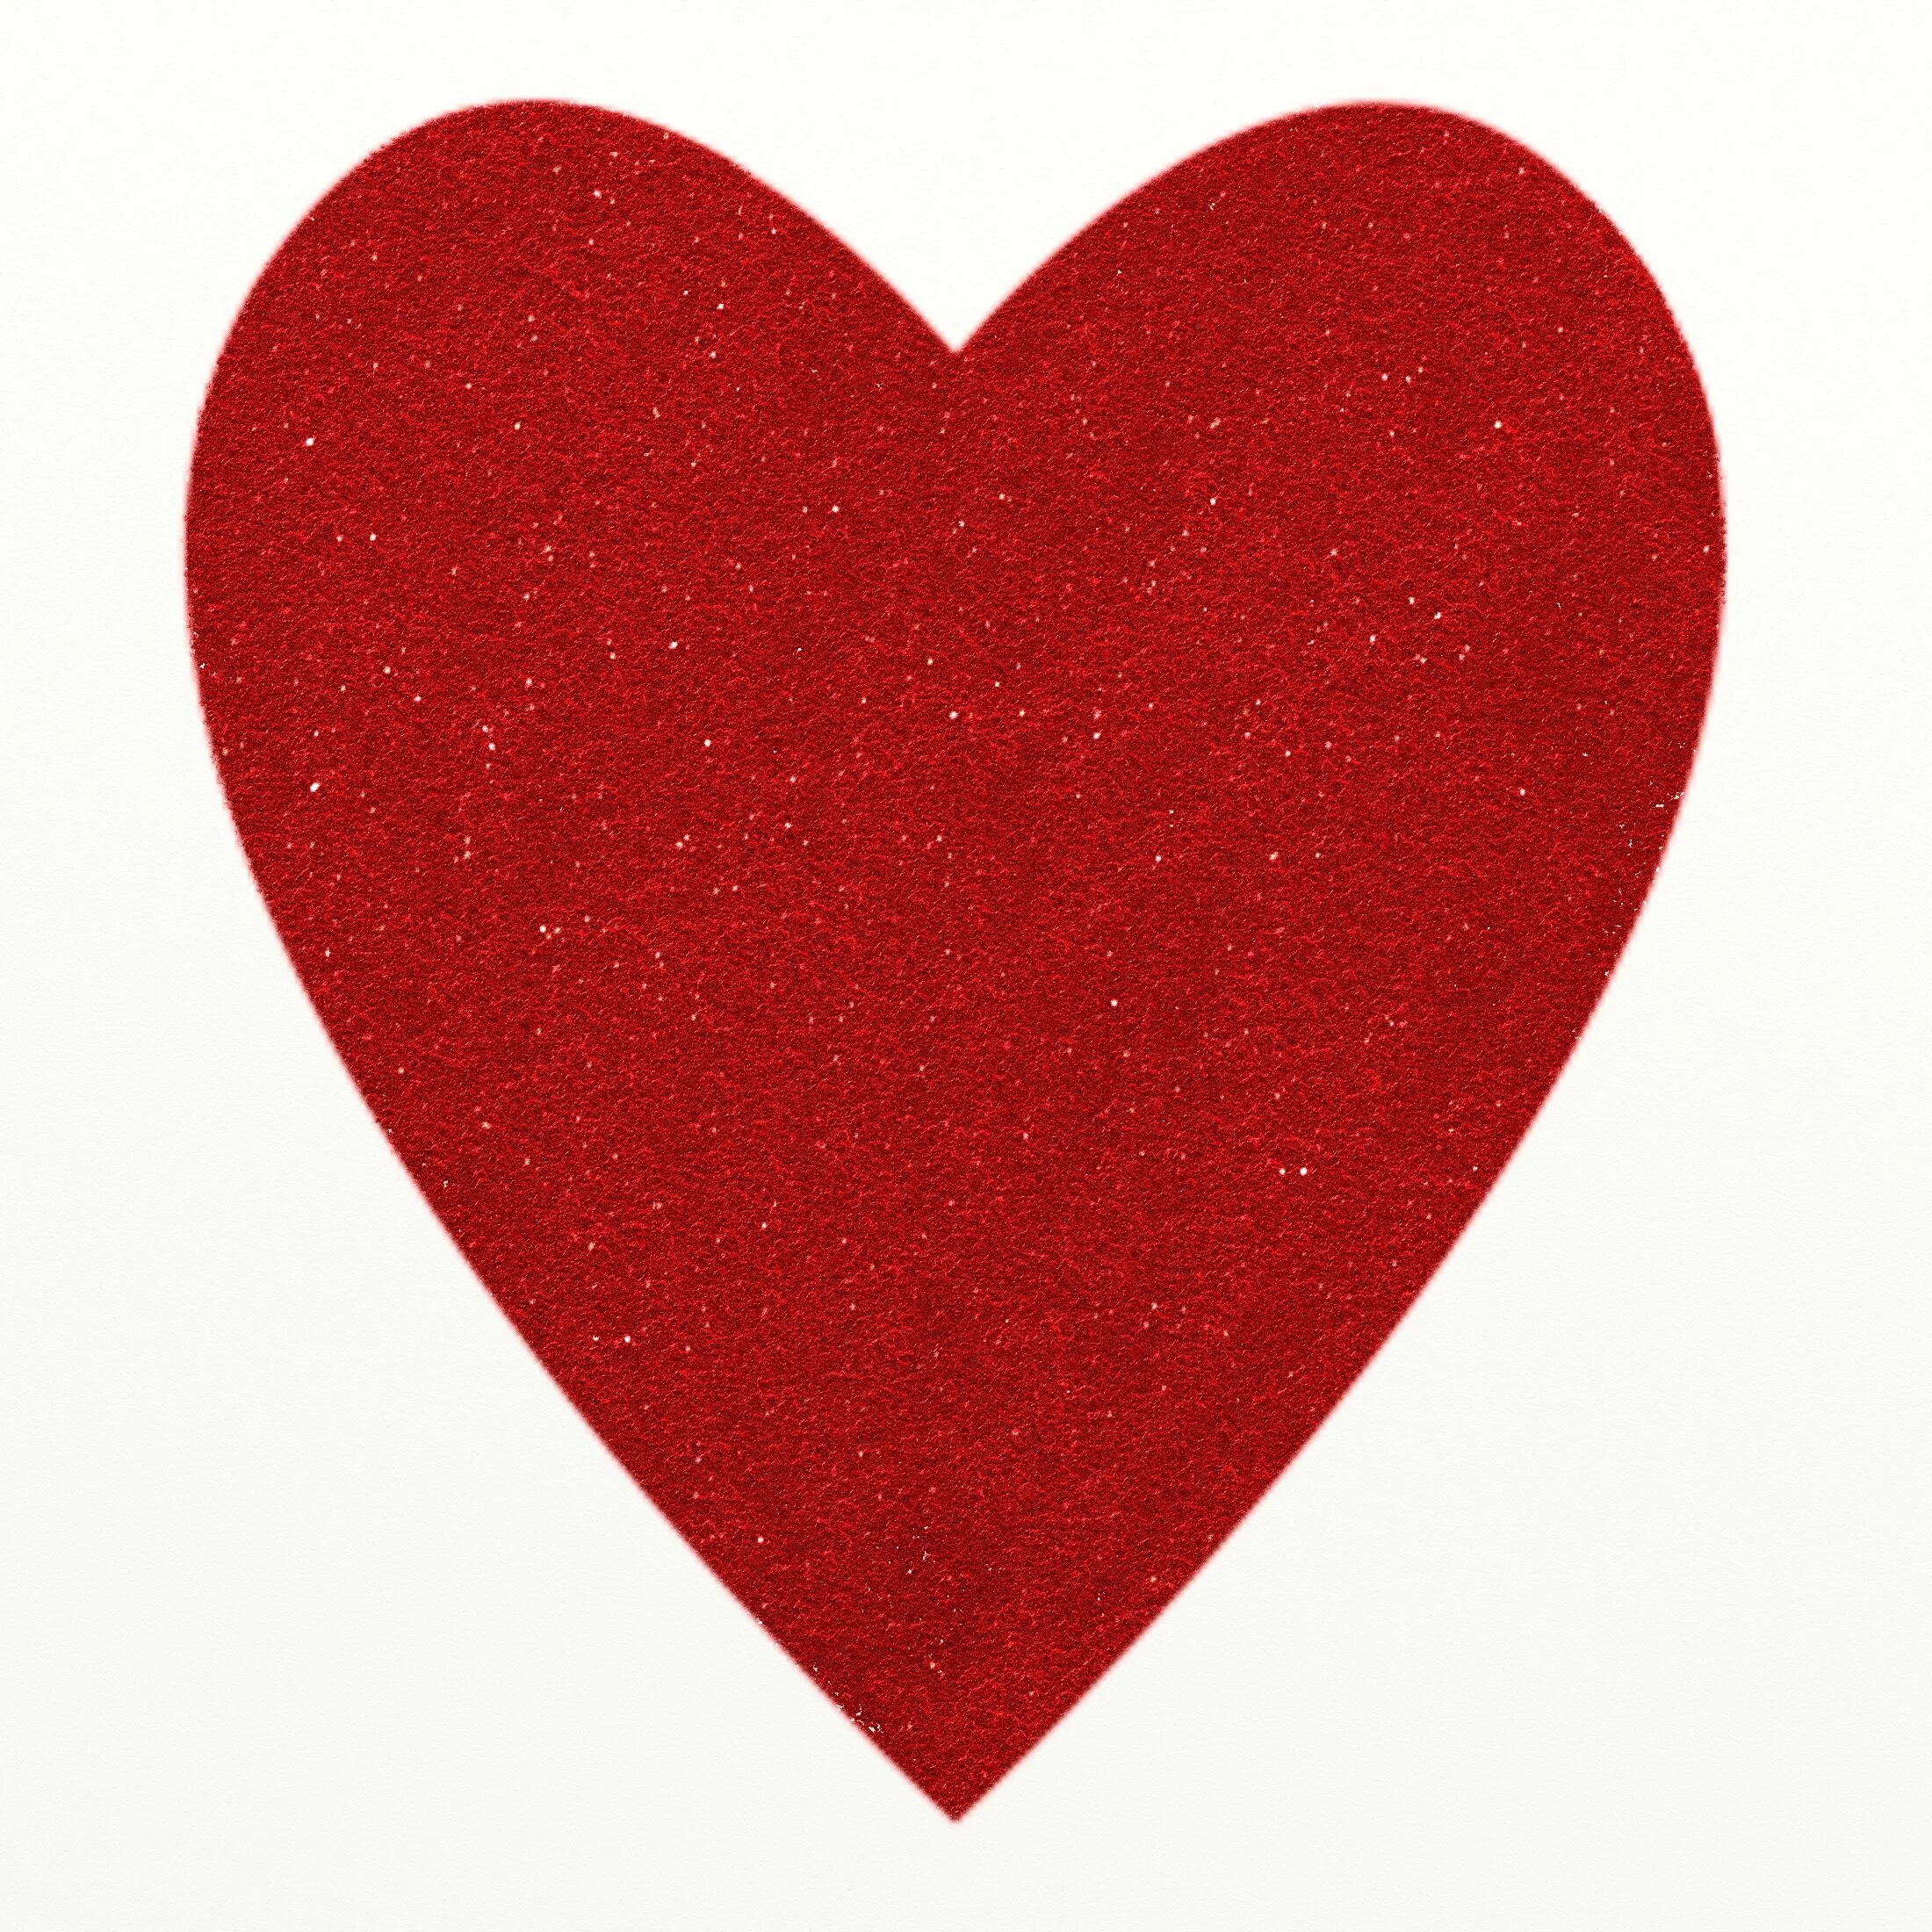 Удлиненное сердце. Красное сердечко. С красным сердцем. Сердечко вытянутое. Форма сердечка.